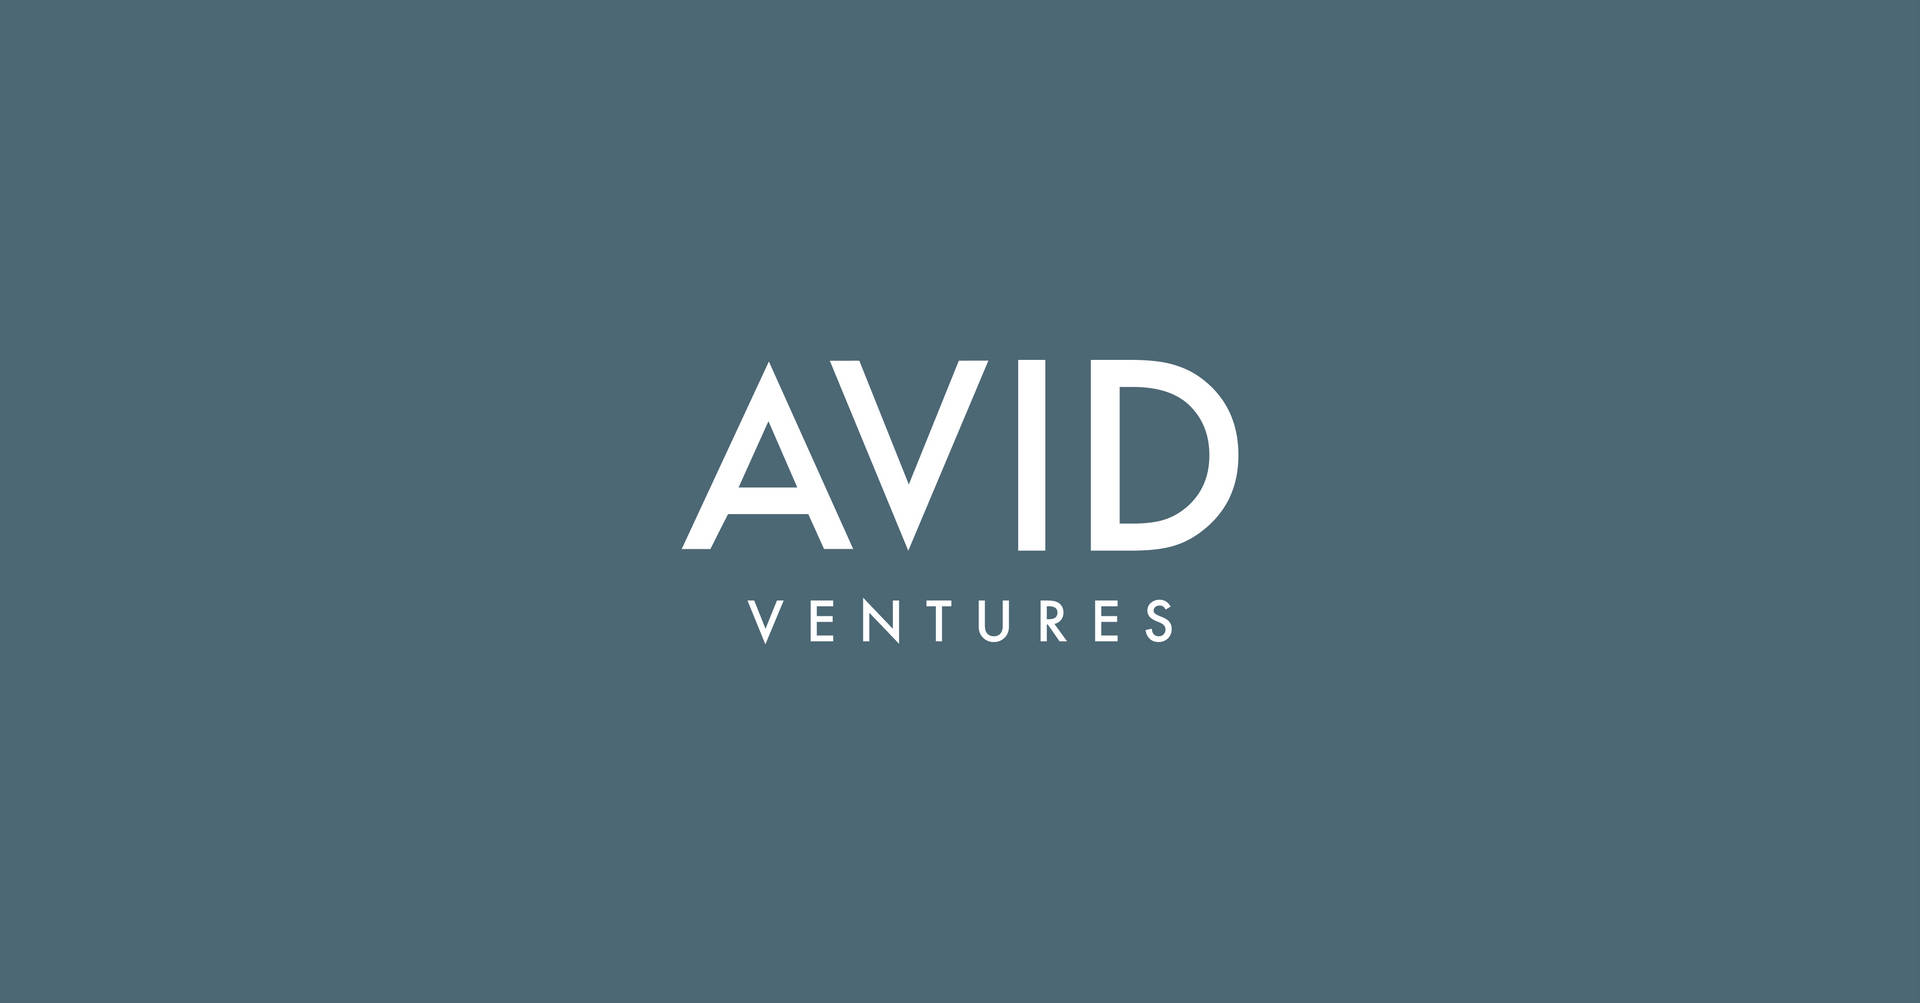 Avid Ventures Advertisement Wallpaper